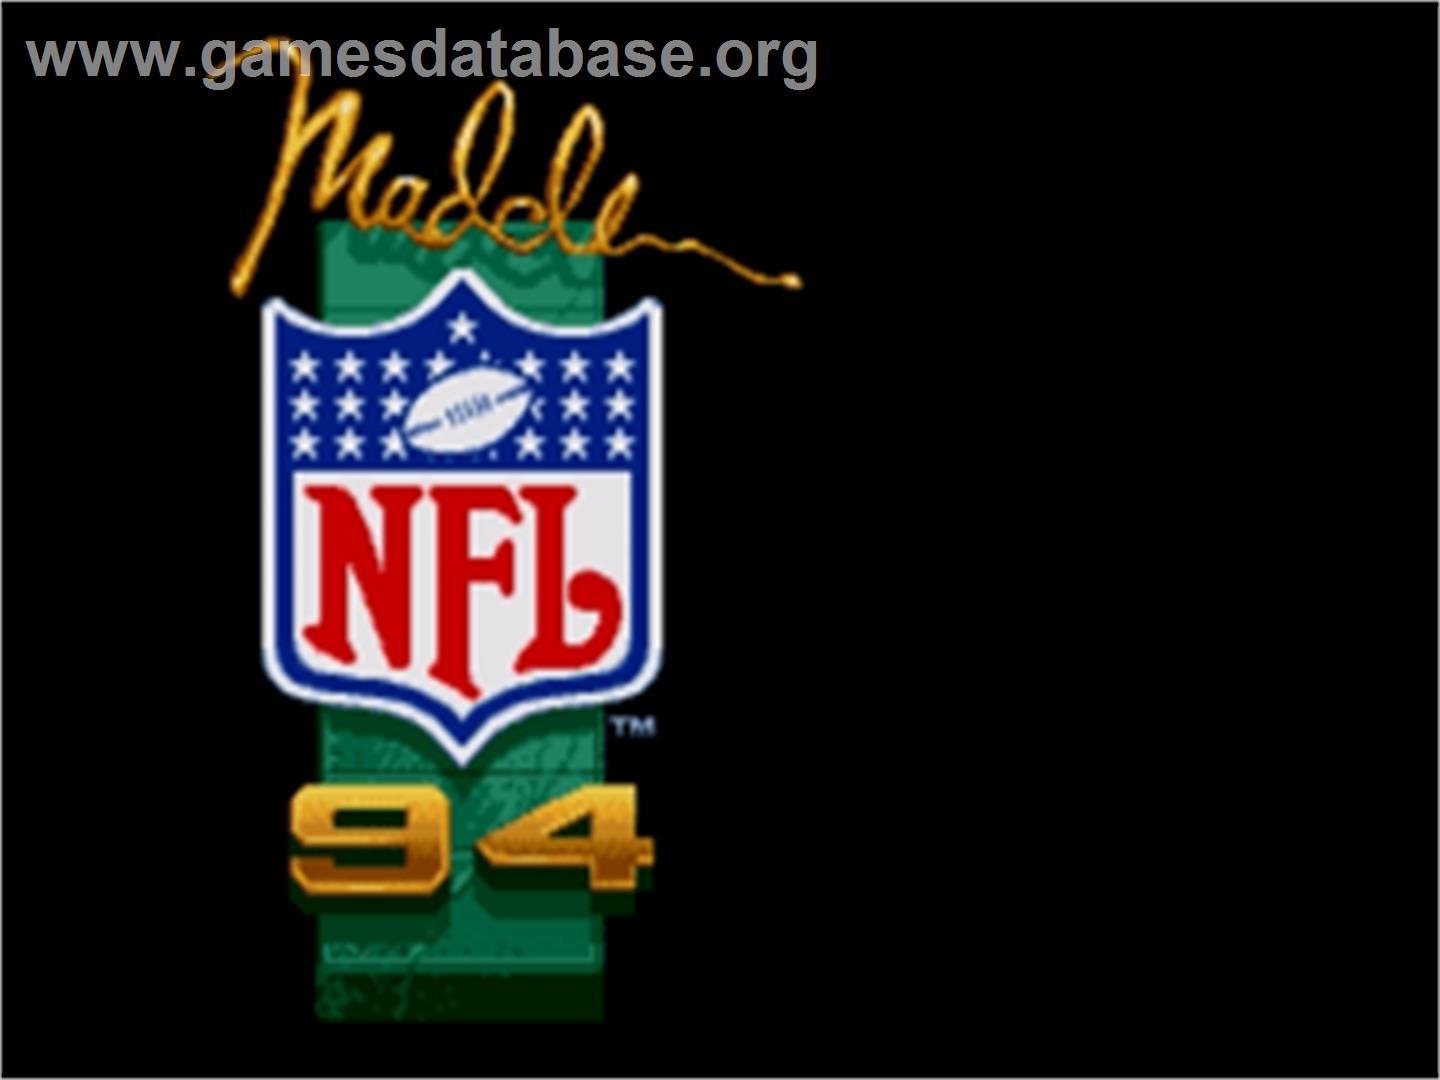 Madden NFL '94 - Sega Nomad - Artwork - Title Screen